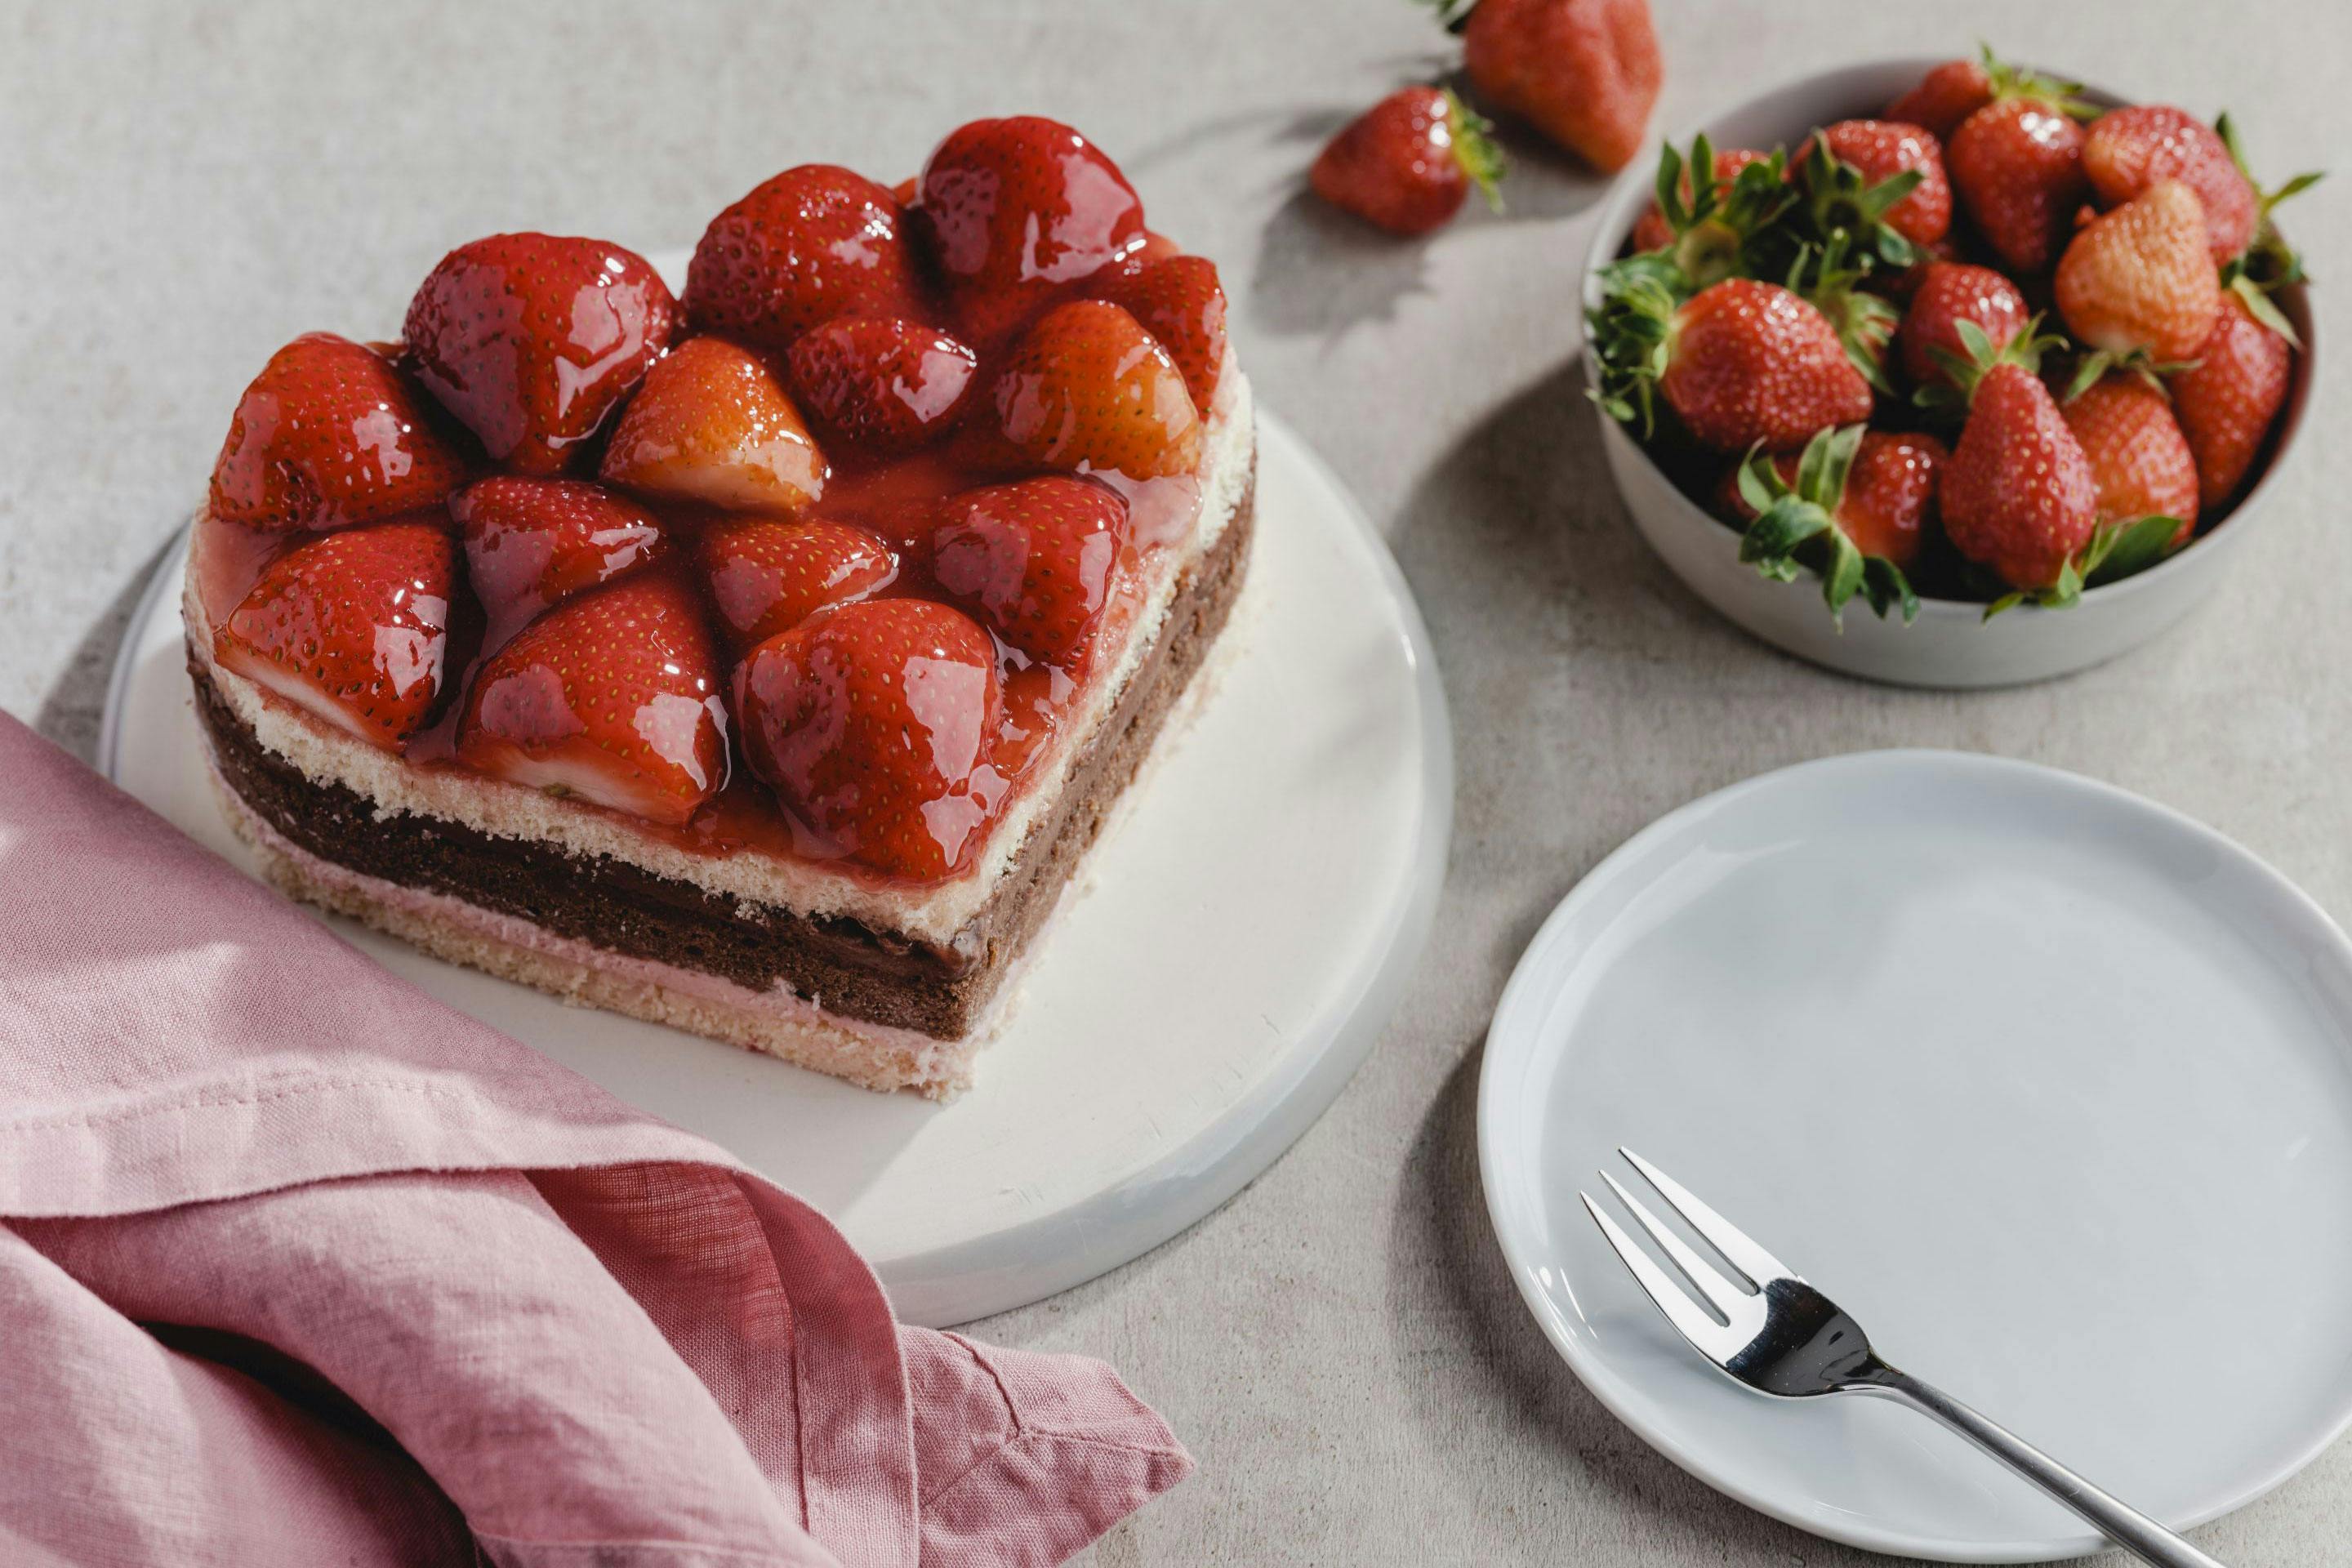 Erdbeer-Schokokuchen in Herzform und ein Schälchen mit Erdbeeren sowie Serviettte und Teller mit Kuchengabel